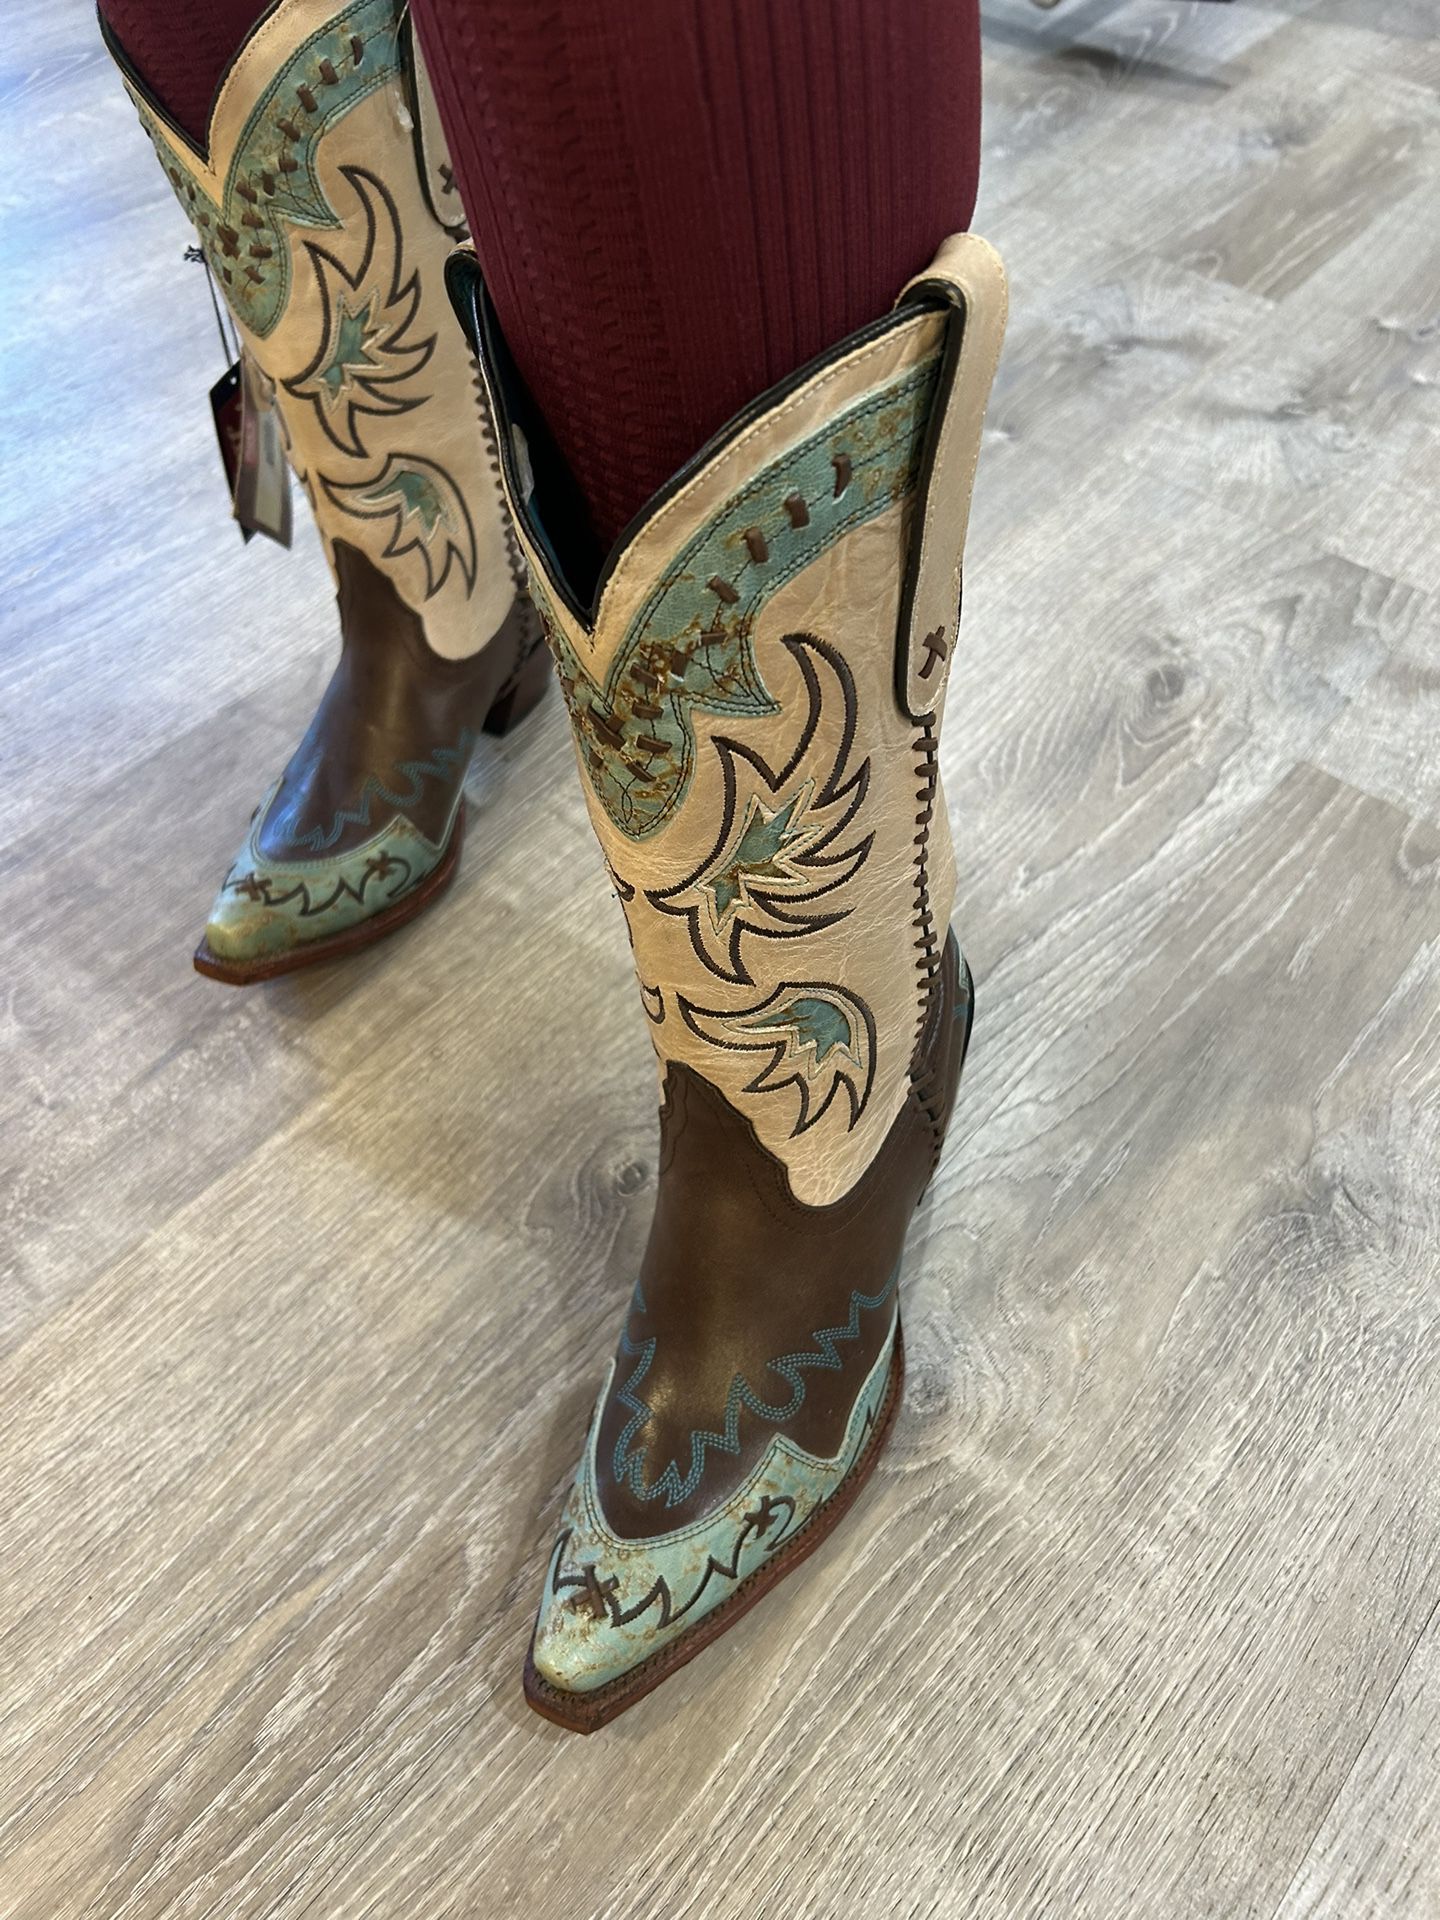 Tony Roma Cowboy Boots Size 9 1/2 